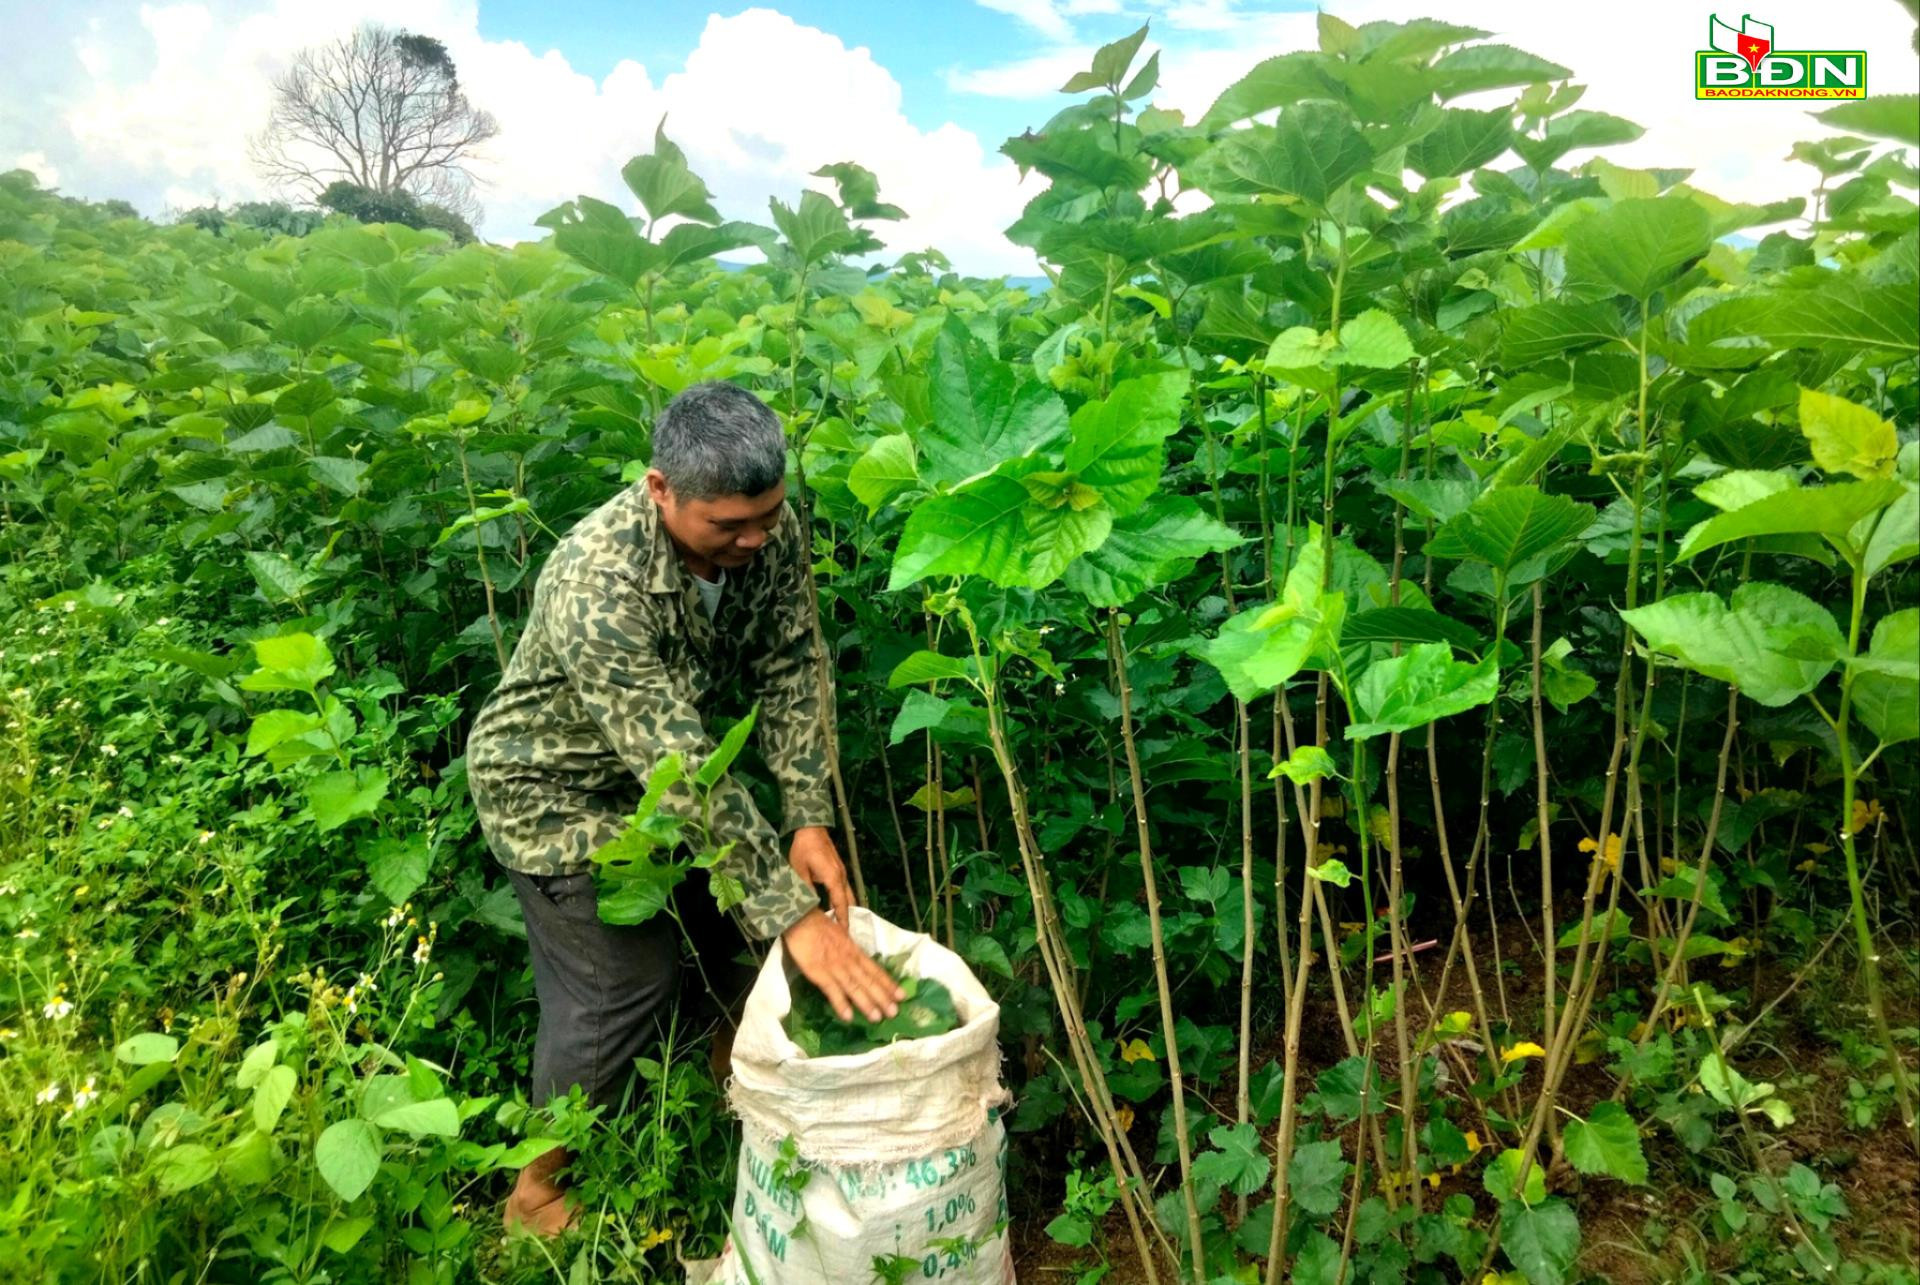 Được hỗ trợ đất sản xuất, đồng bào DTTS xã Quảng Hòa (Đắk Glong - Đắk Nông) trồng dâu, nuôi tằm mang lại hiệu quả kinh tế cao. Ảnh: baodacnong.vn